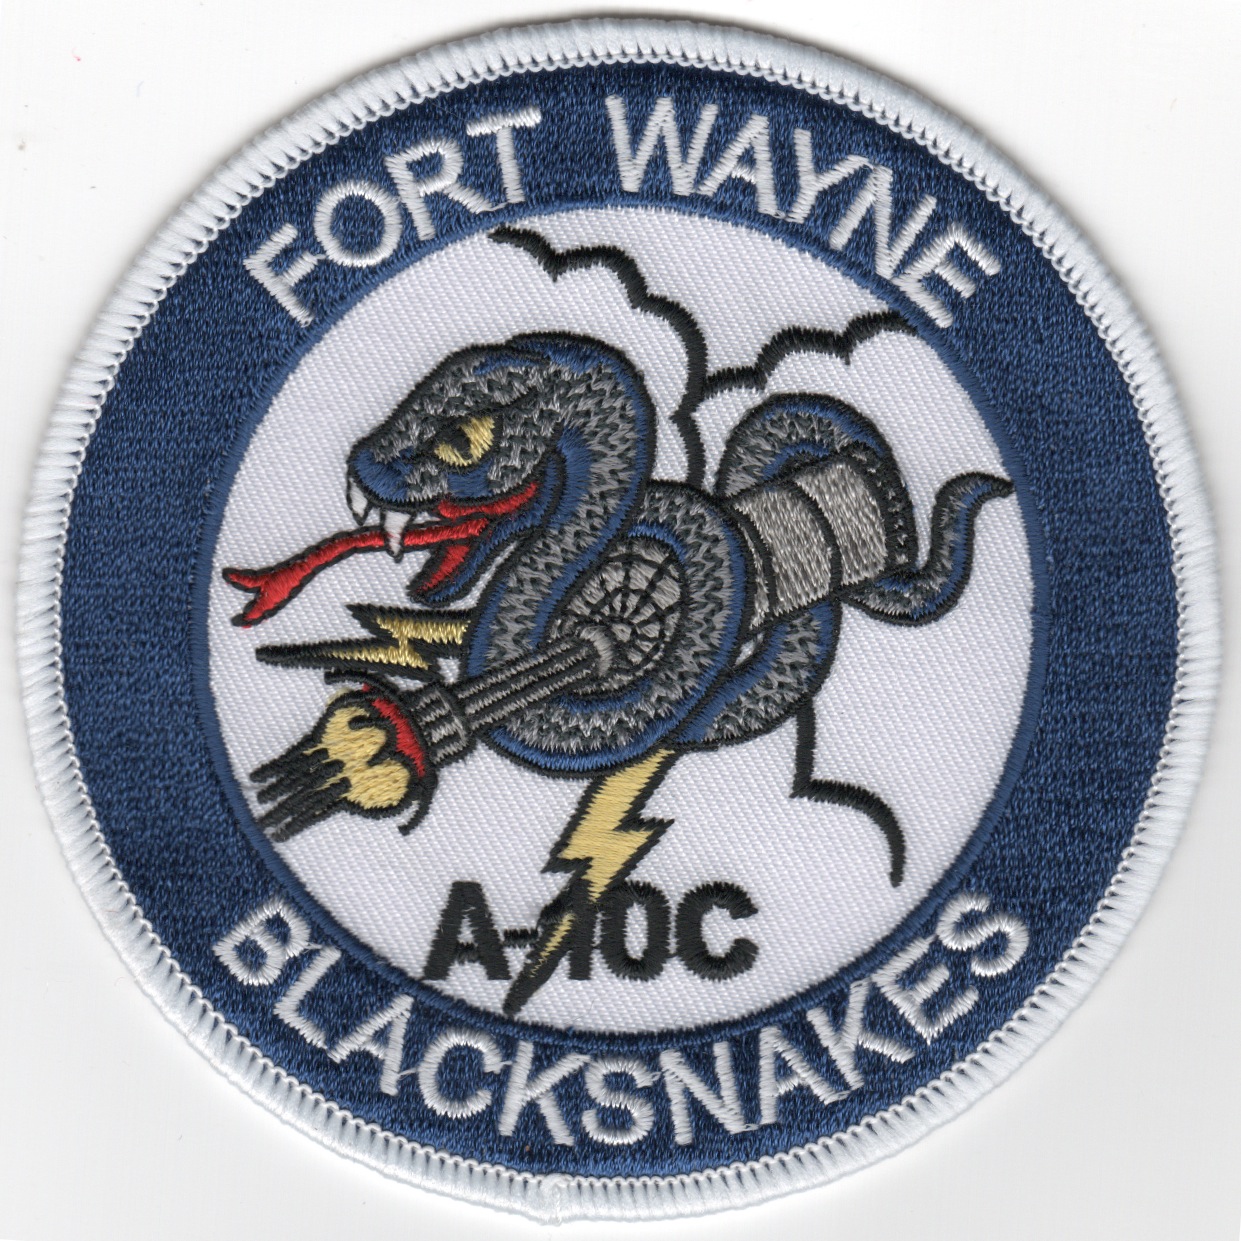 163FS 'Ft. Wayne/Blacksnakes' Patch